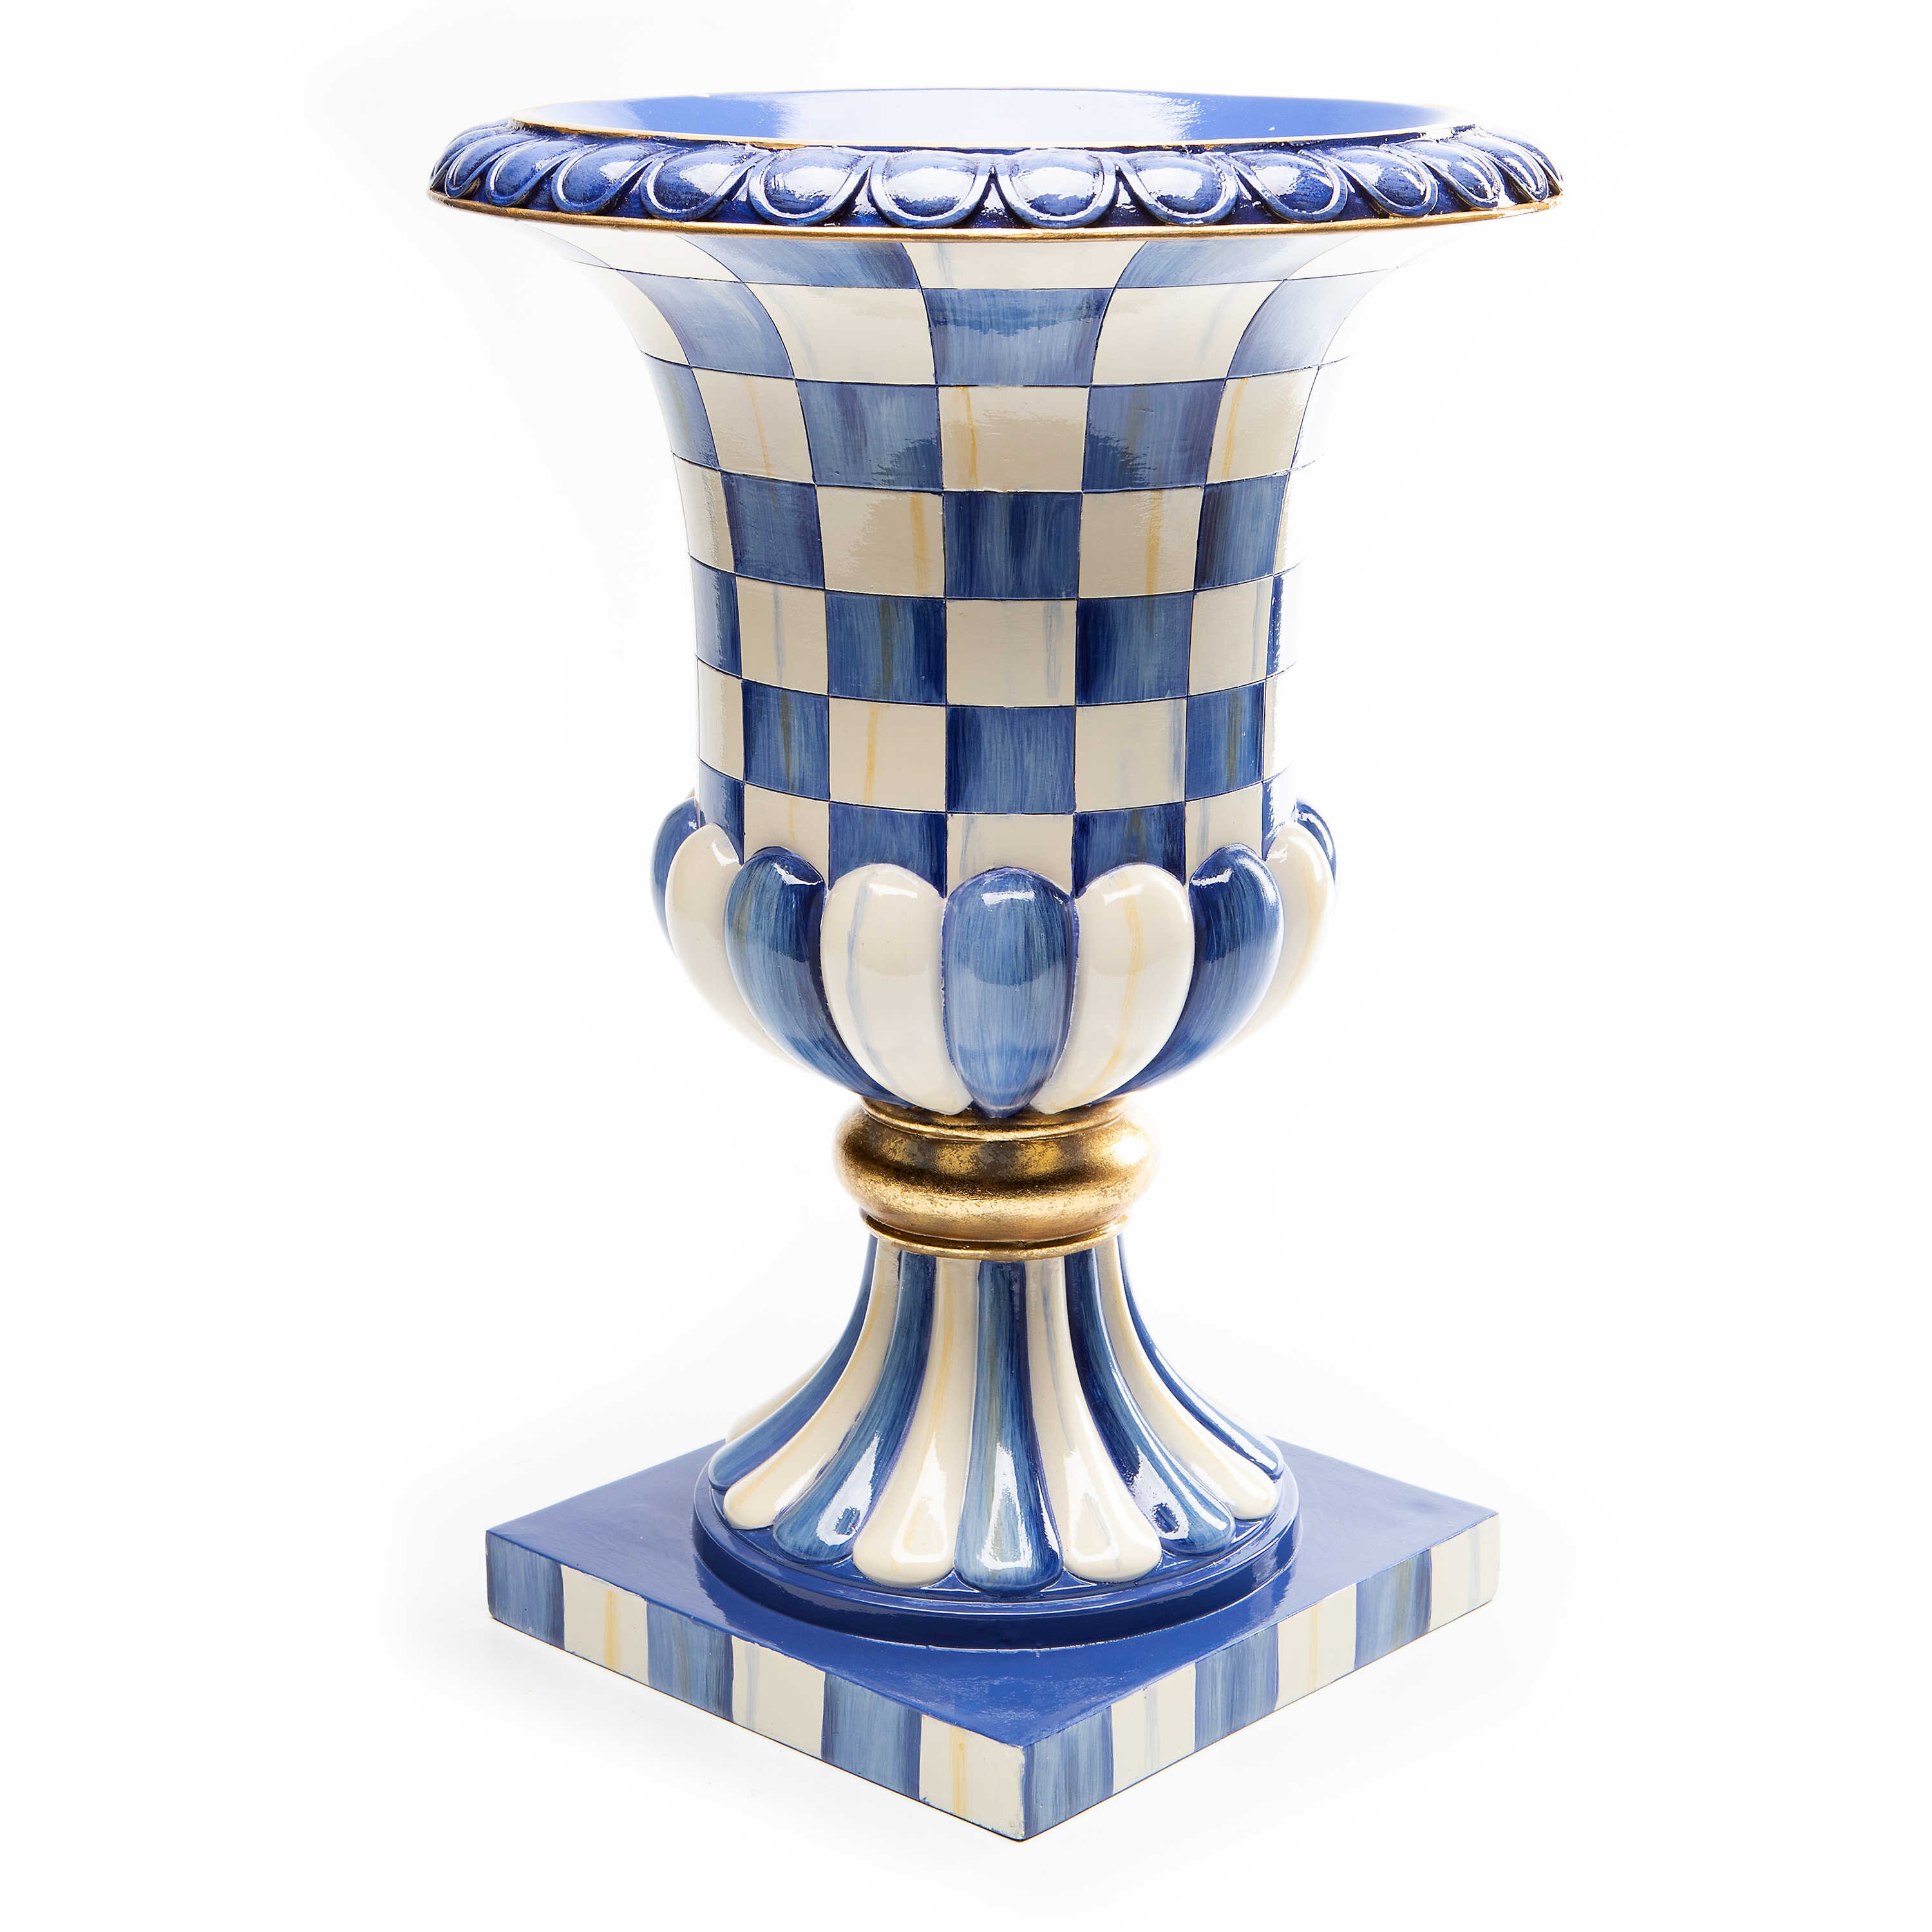 https://assets.wfcdn.com/im/71771290/compr-r85/1862/186217461/royal-check-pedestal-tabletop-urn.jpg